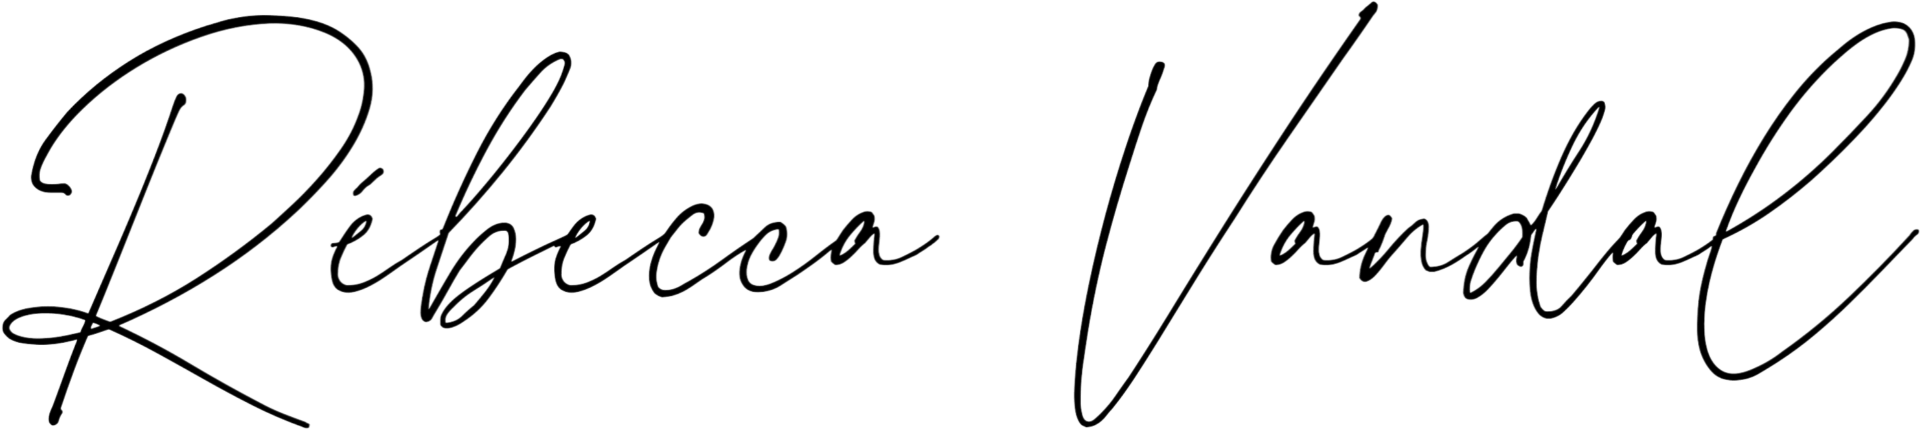 Signature de Rébecca Vandal